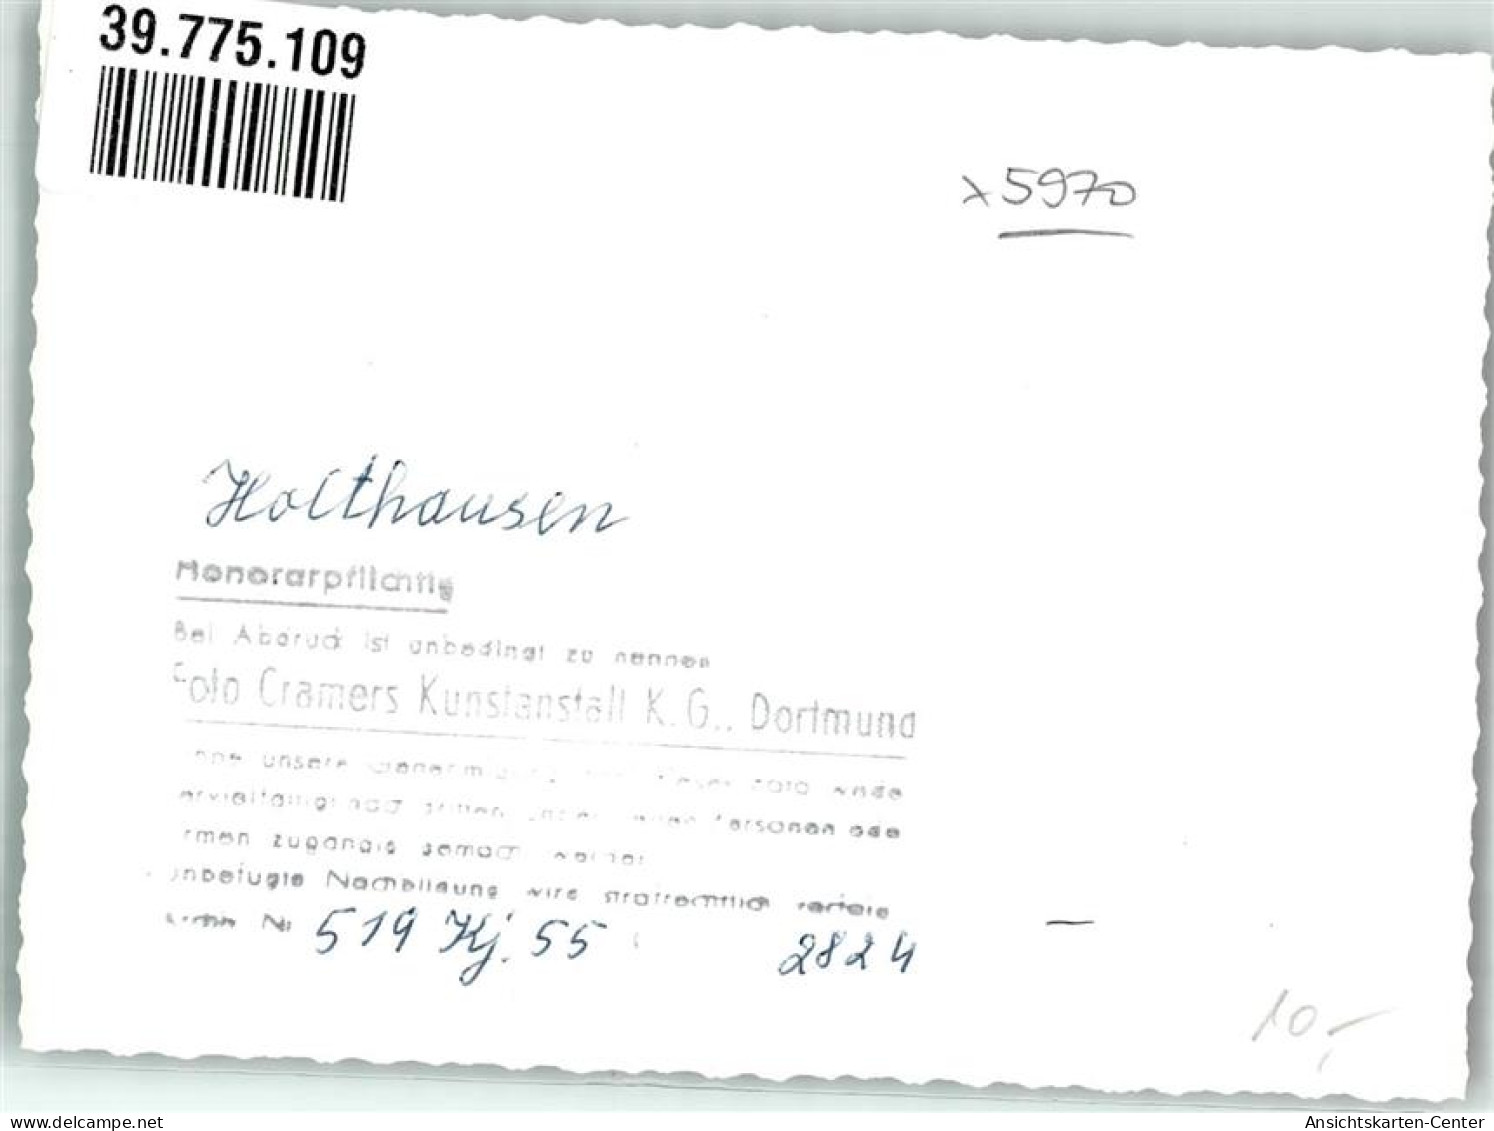 39775109 - Holthausen - Plettenberg